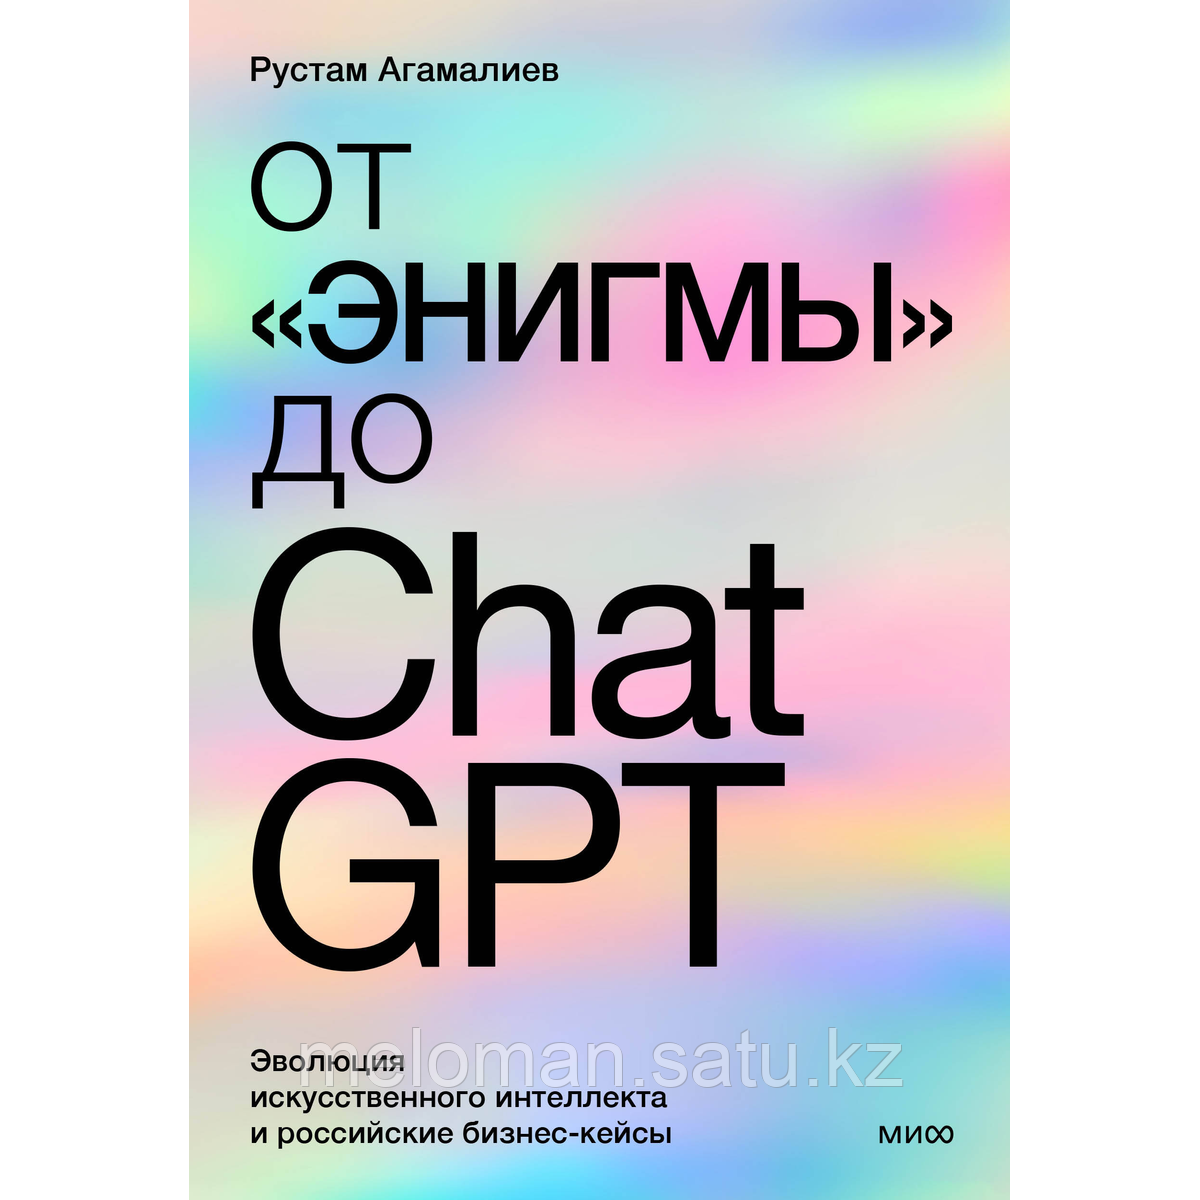 Агамалиев Р.: От "Энигмы" до ChatGPT. Эволюция искусственного интеллекта и российские бизнес-кейсы